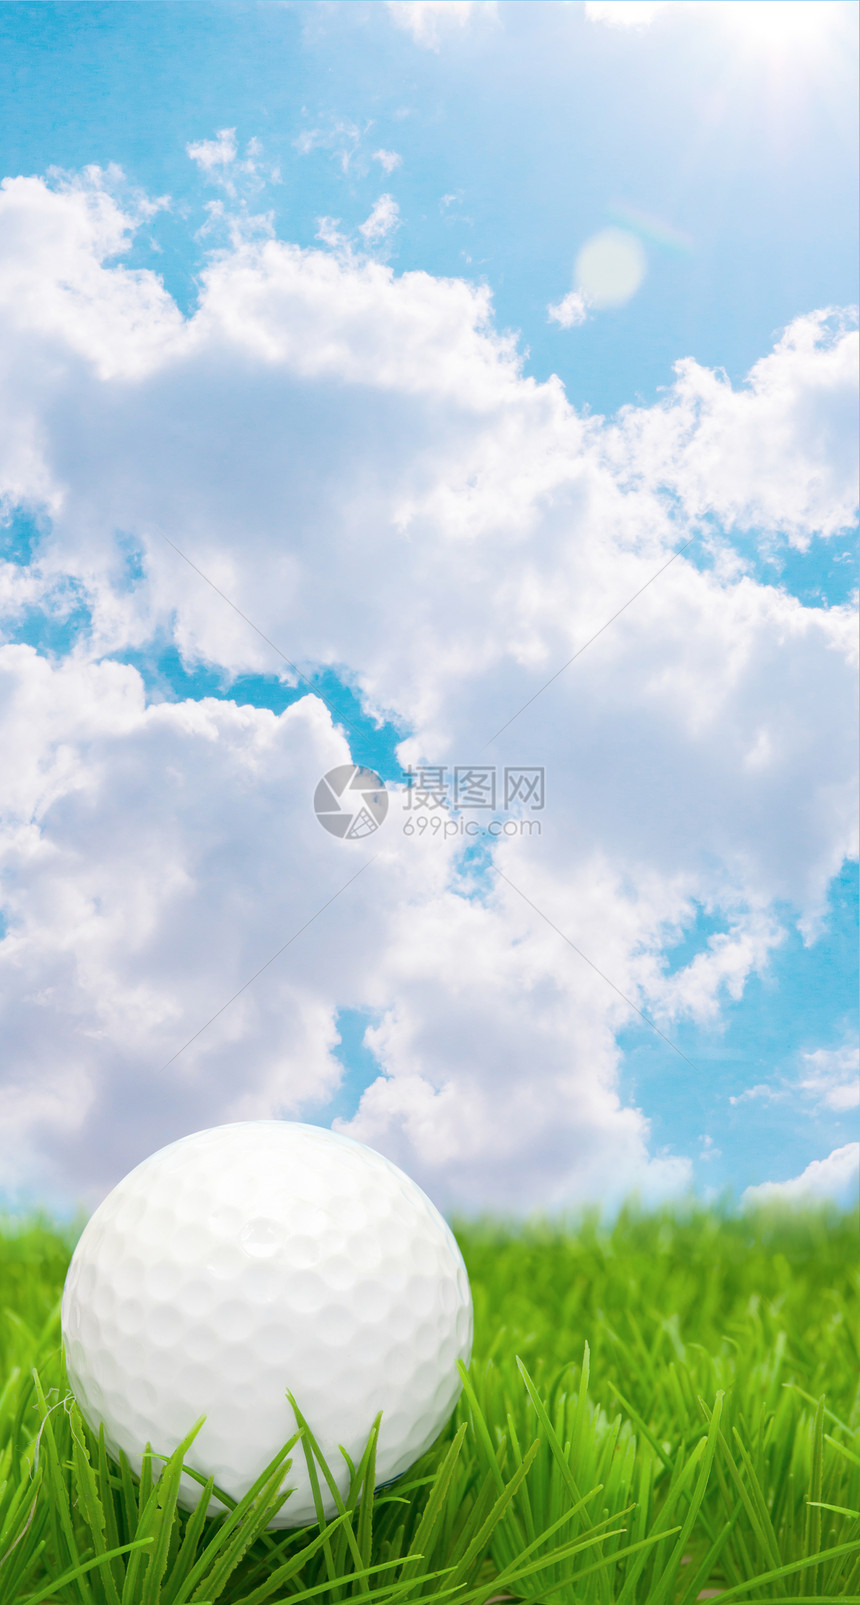 高尔夫球球蓝色天空绿色课程球道场地游戏运动草地推杆图片